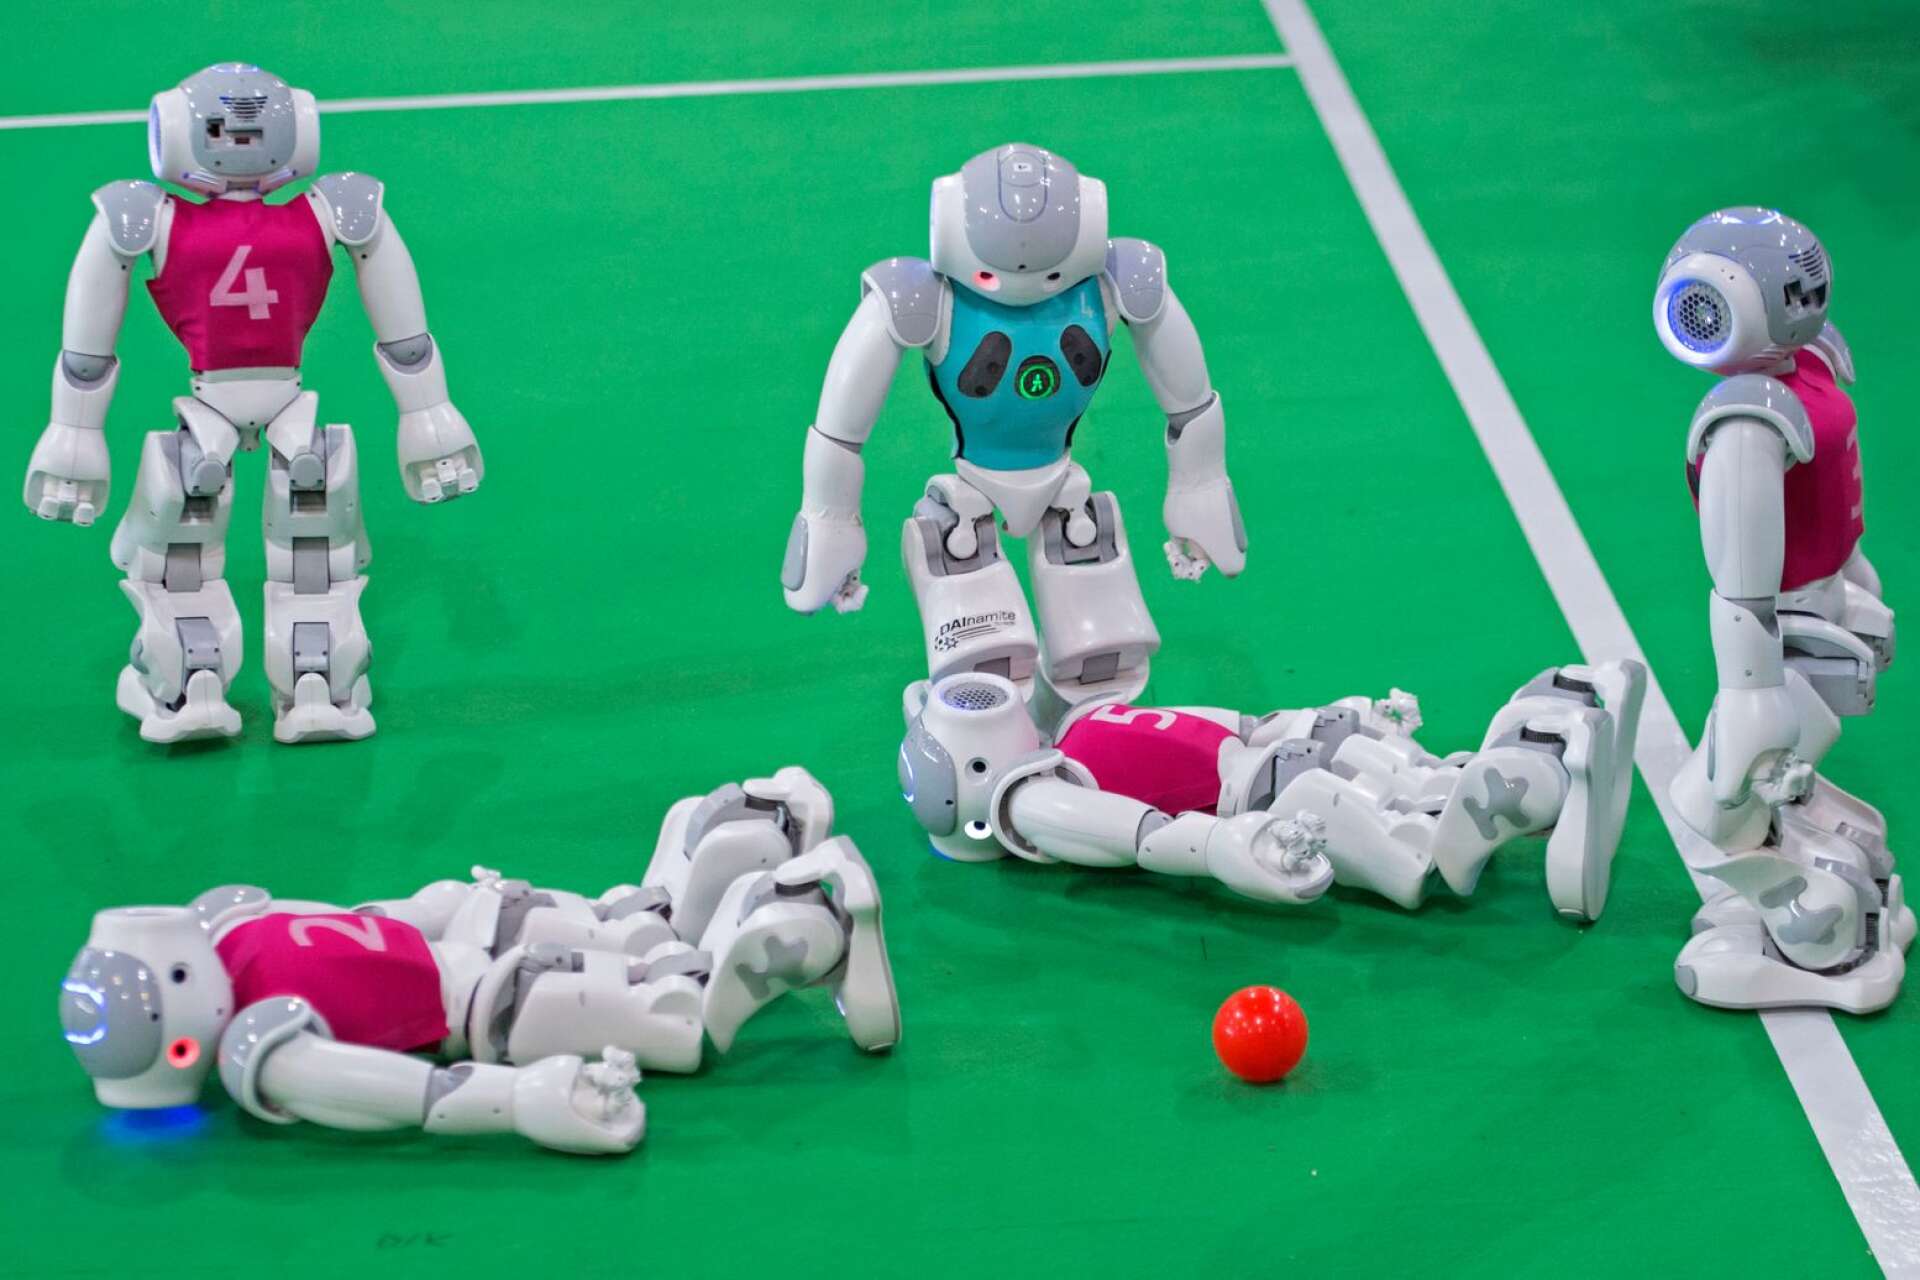 &quot;Jag är verkligen inte techfientlig eller bakåtsträvande, men till och med jag börjar känna lite obehag över utvecklingen inom artificiell intelligens&quot;, skriver Tim Sterner. På bilden syns ett gäng robotar som spelar fotboll.